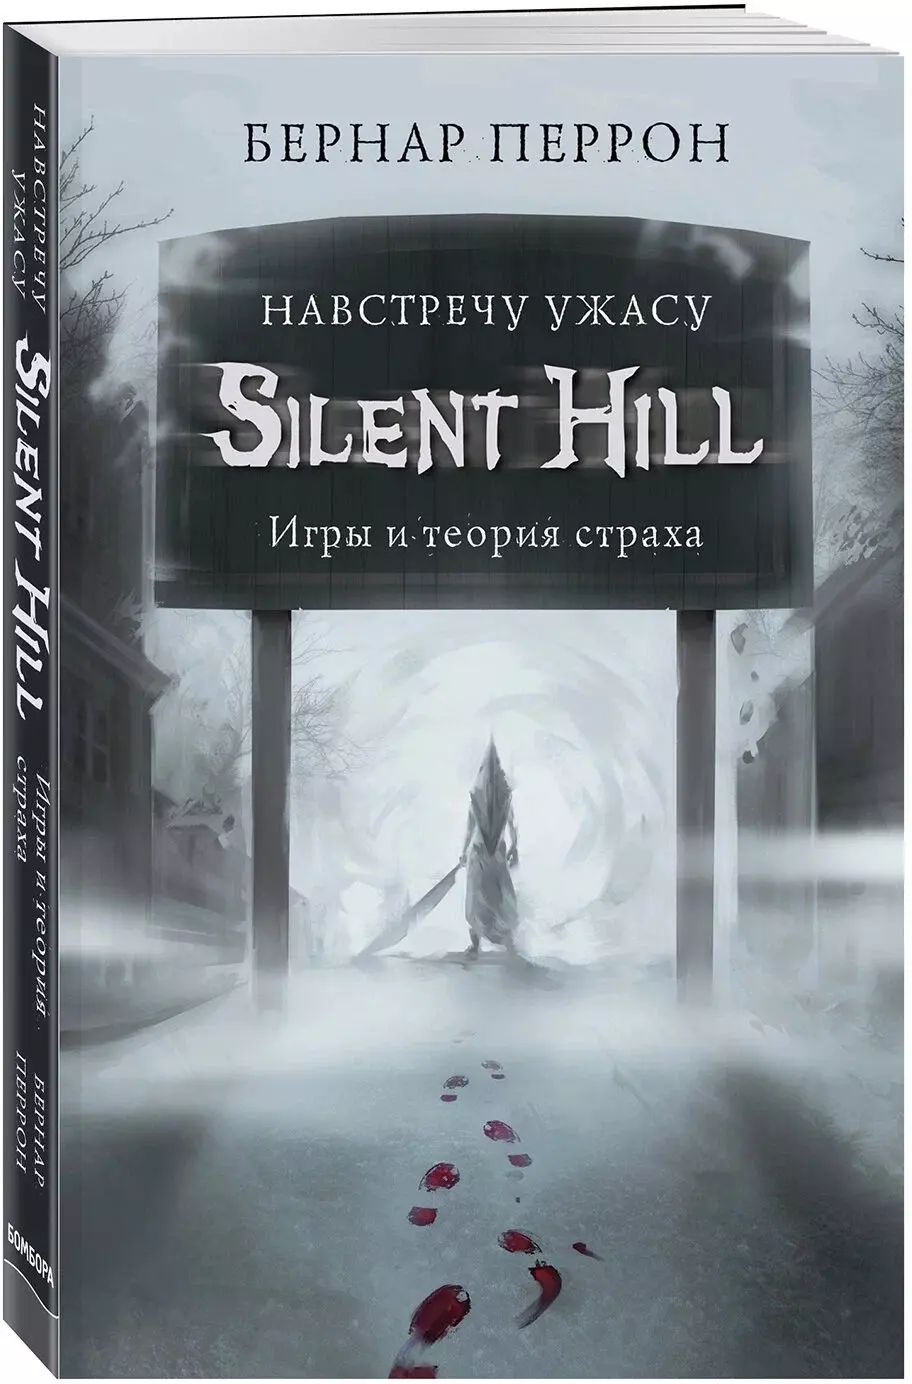 Бернар Перрон «Silent Hill: Навстречу ужасу — игры и теория страха»